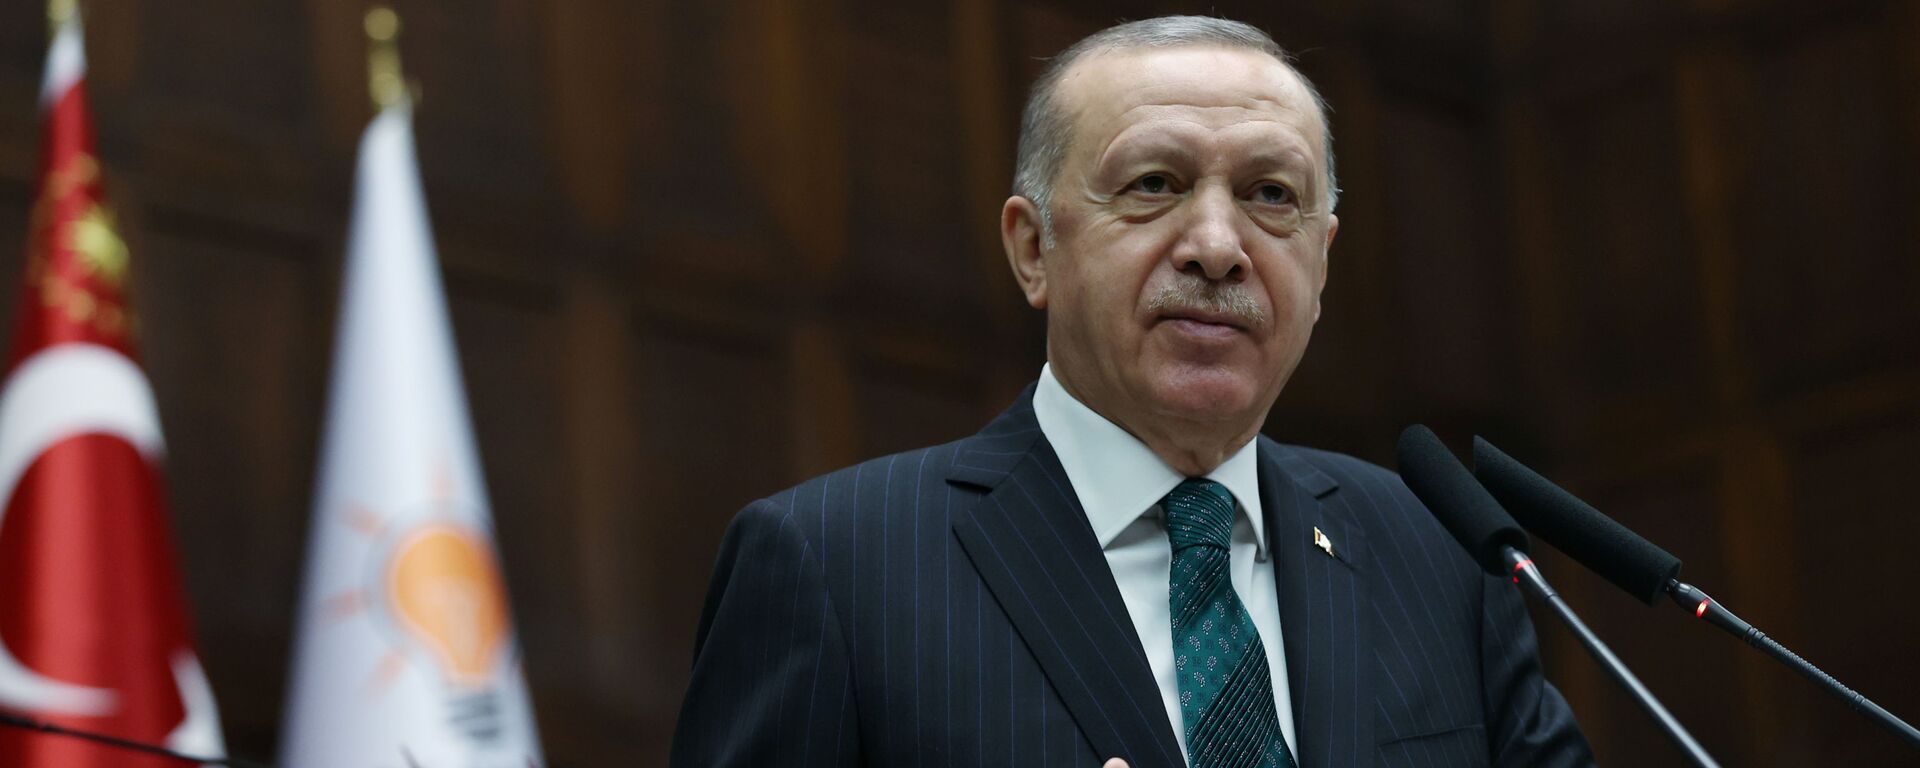 Recep Tayyip Erdogan, presidente de Turquía  - Sputnik Mundo, 1920, 10.02.2021